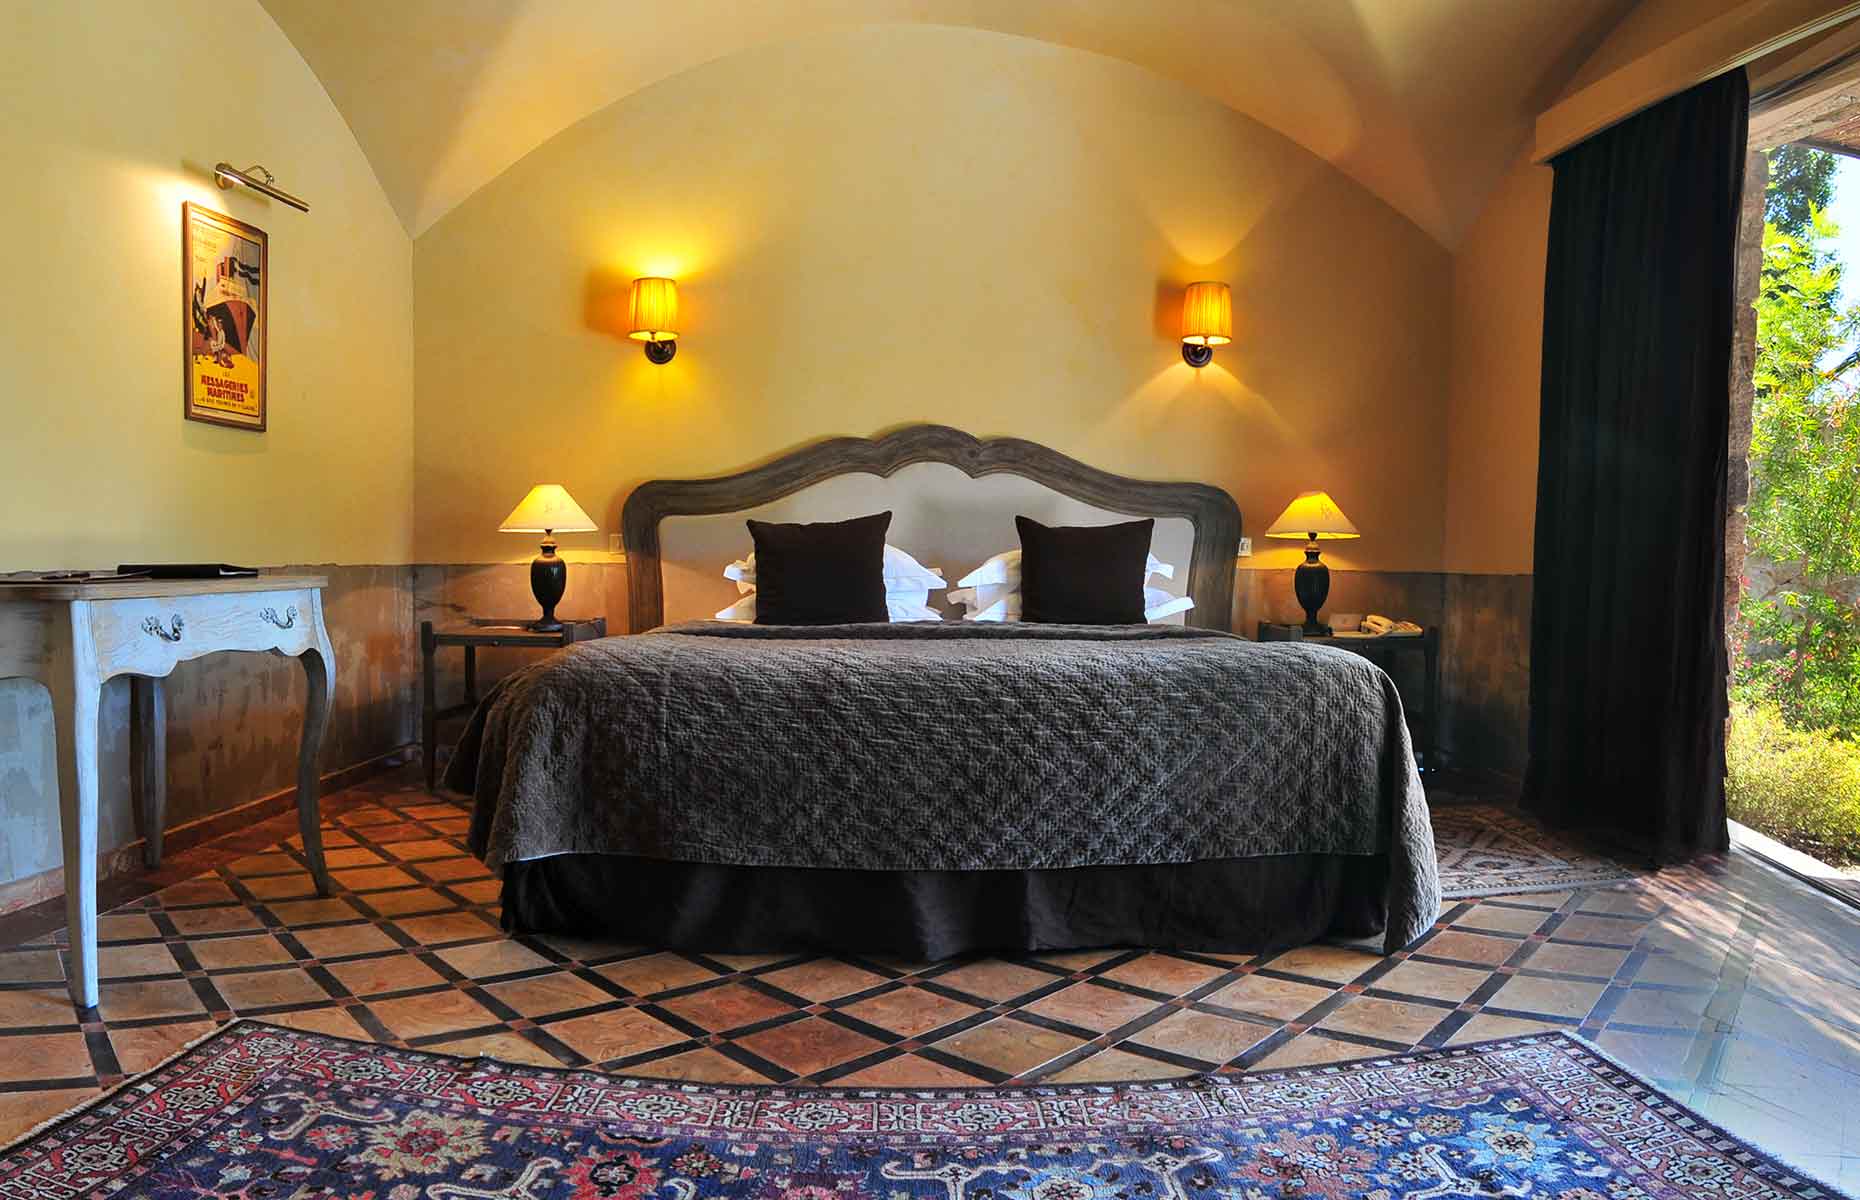 Chambre La Signora - Hôtel Calvi, Corse